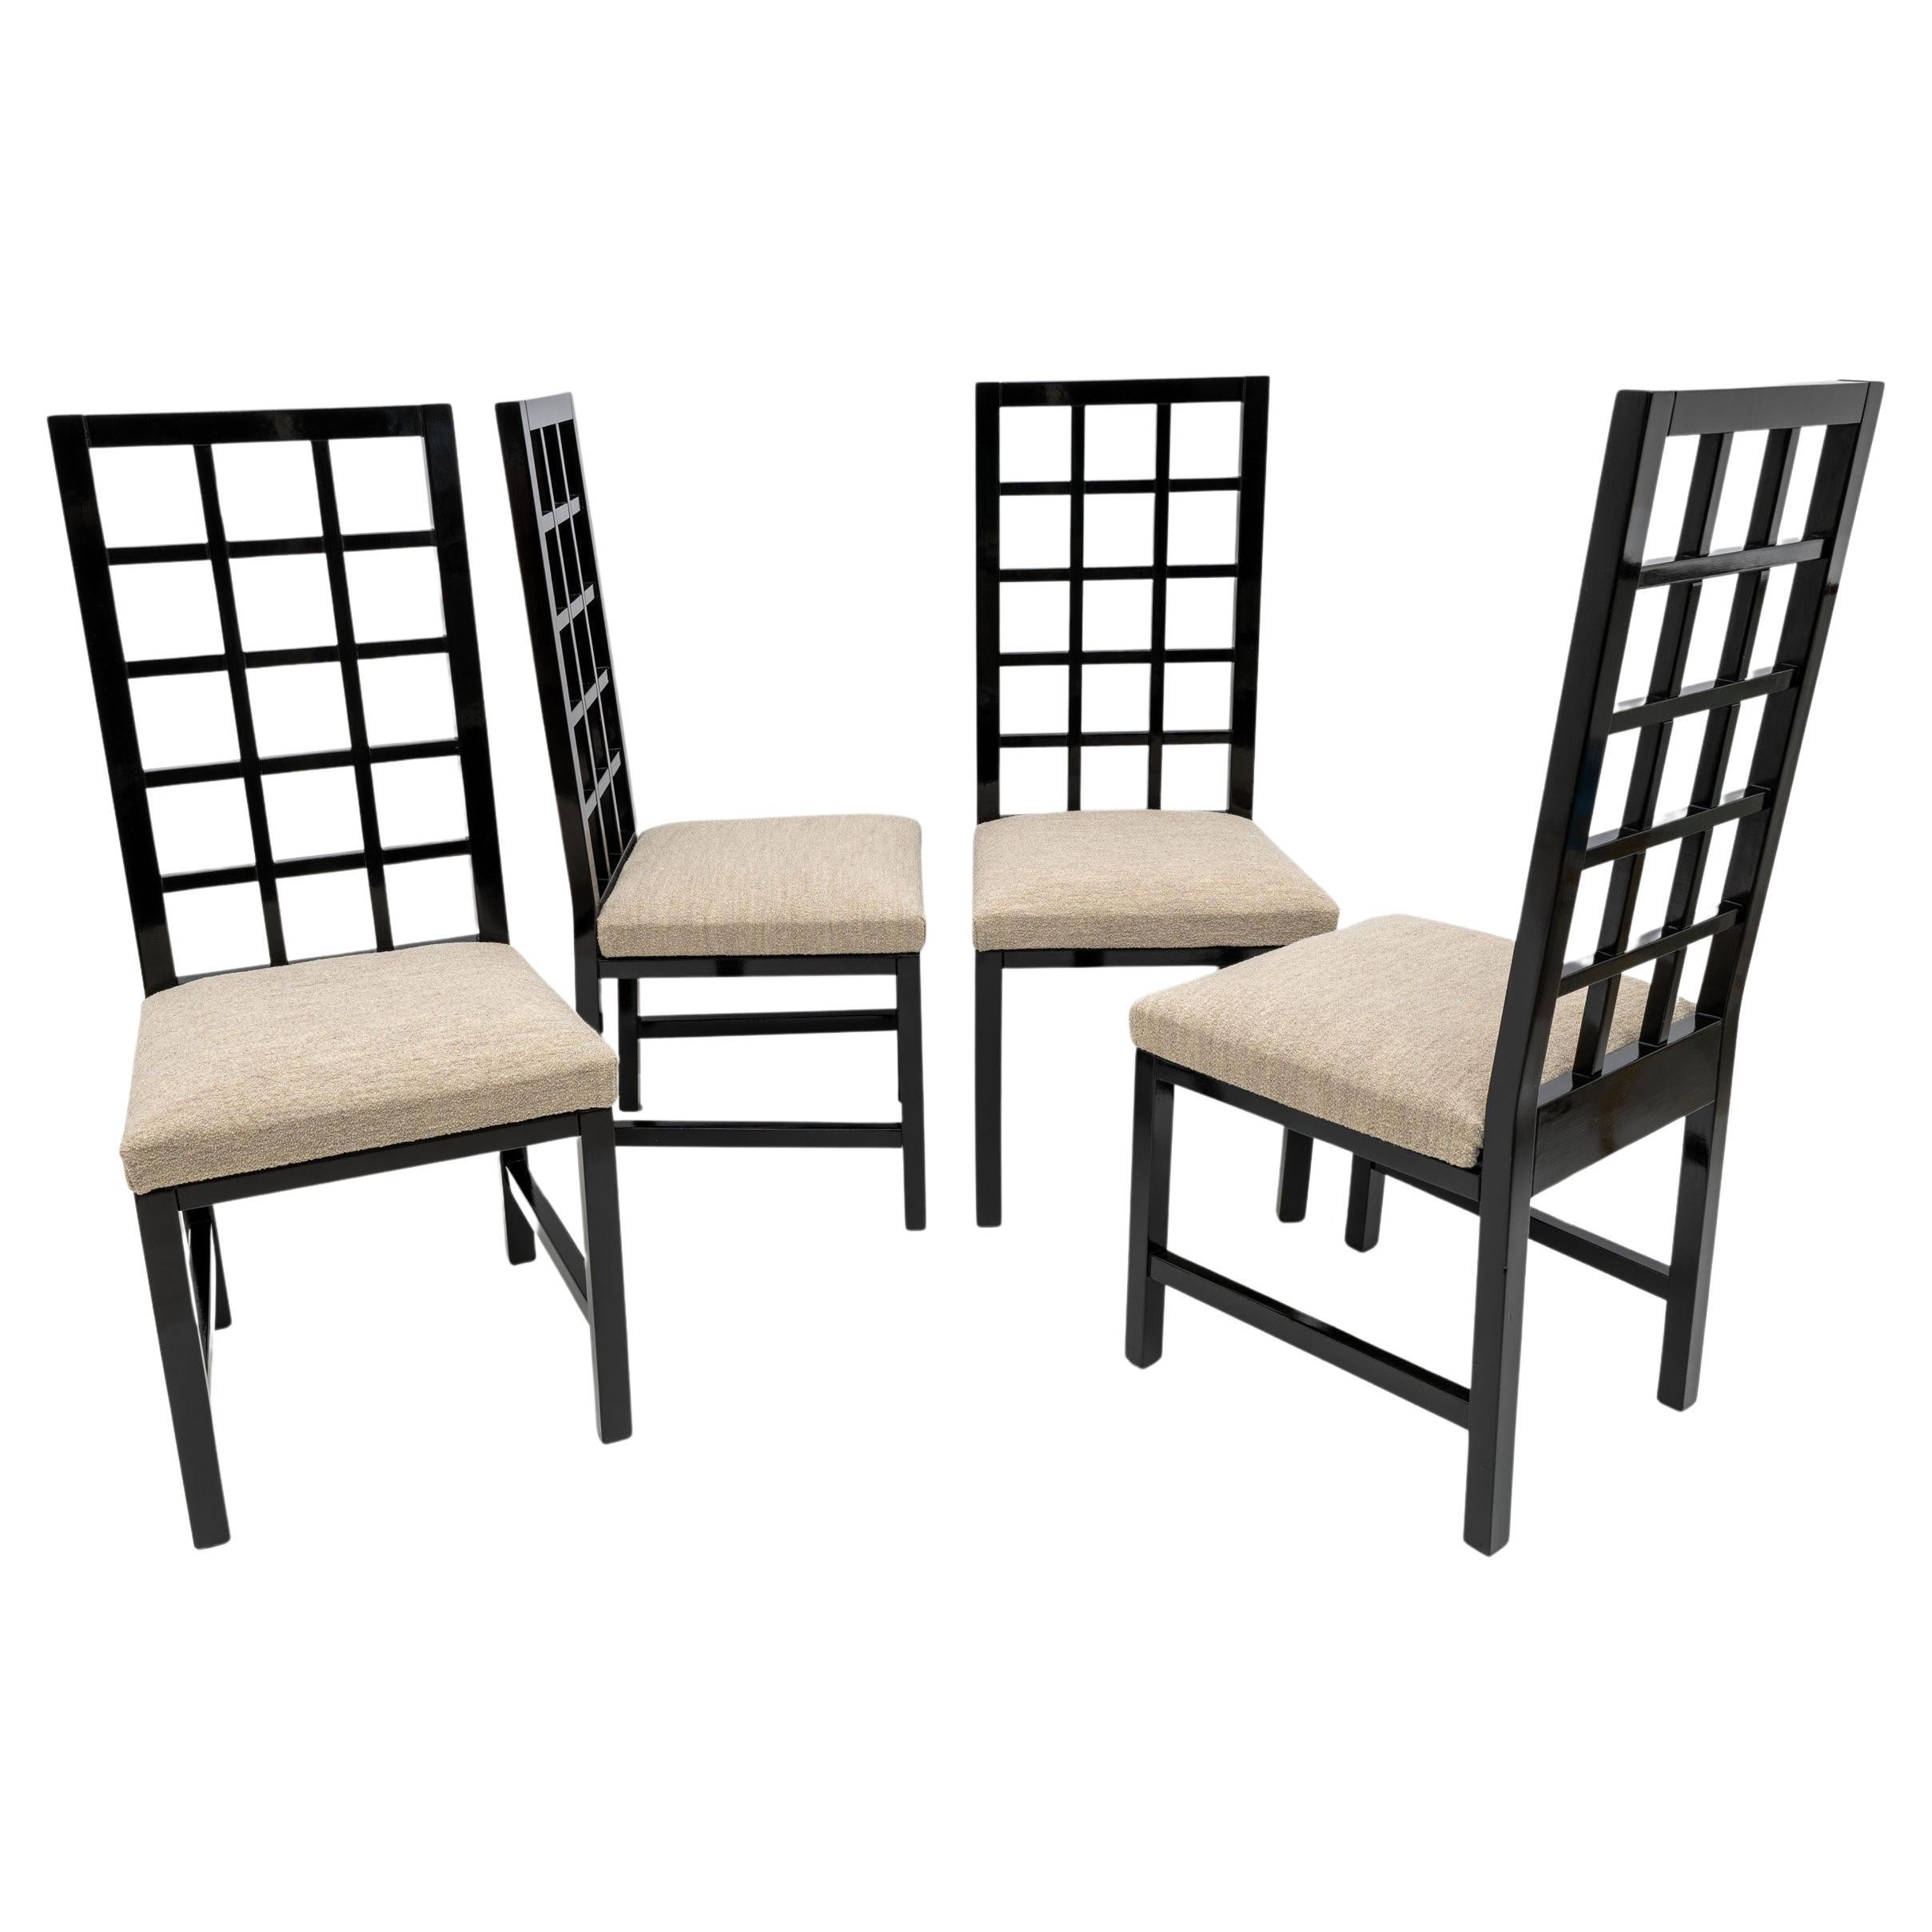 Vier schwarz lackierte Stühle mit hoher Rückenlehne im Mackintosh-Stil, 1979